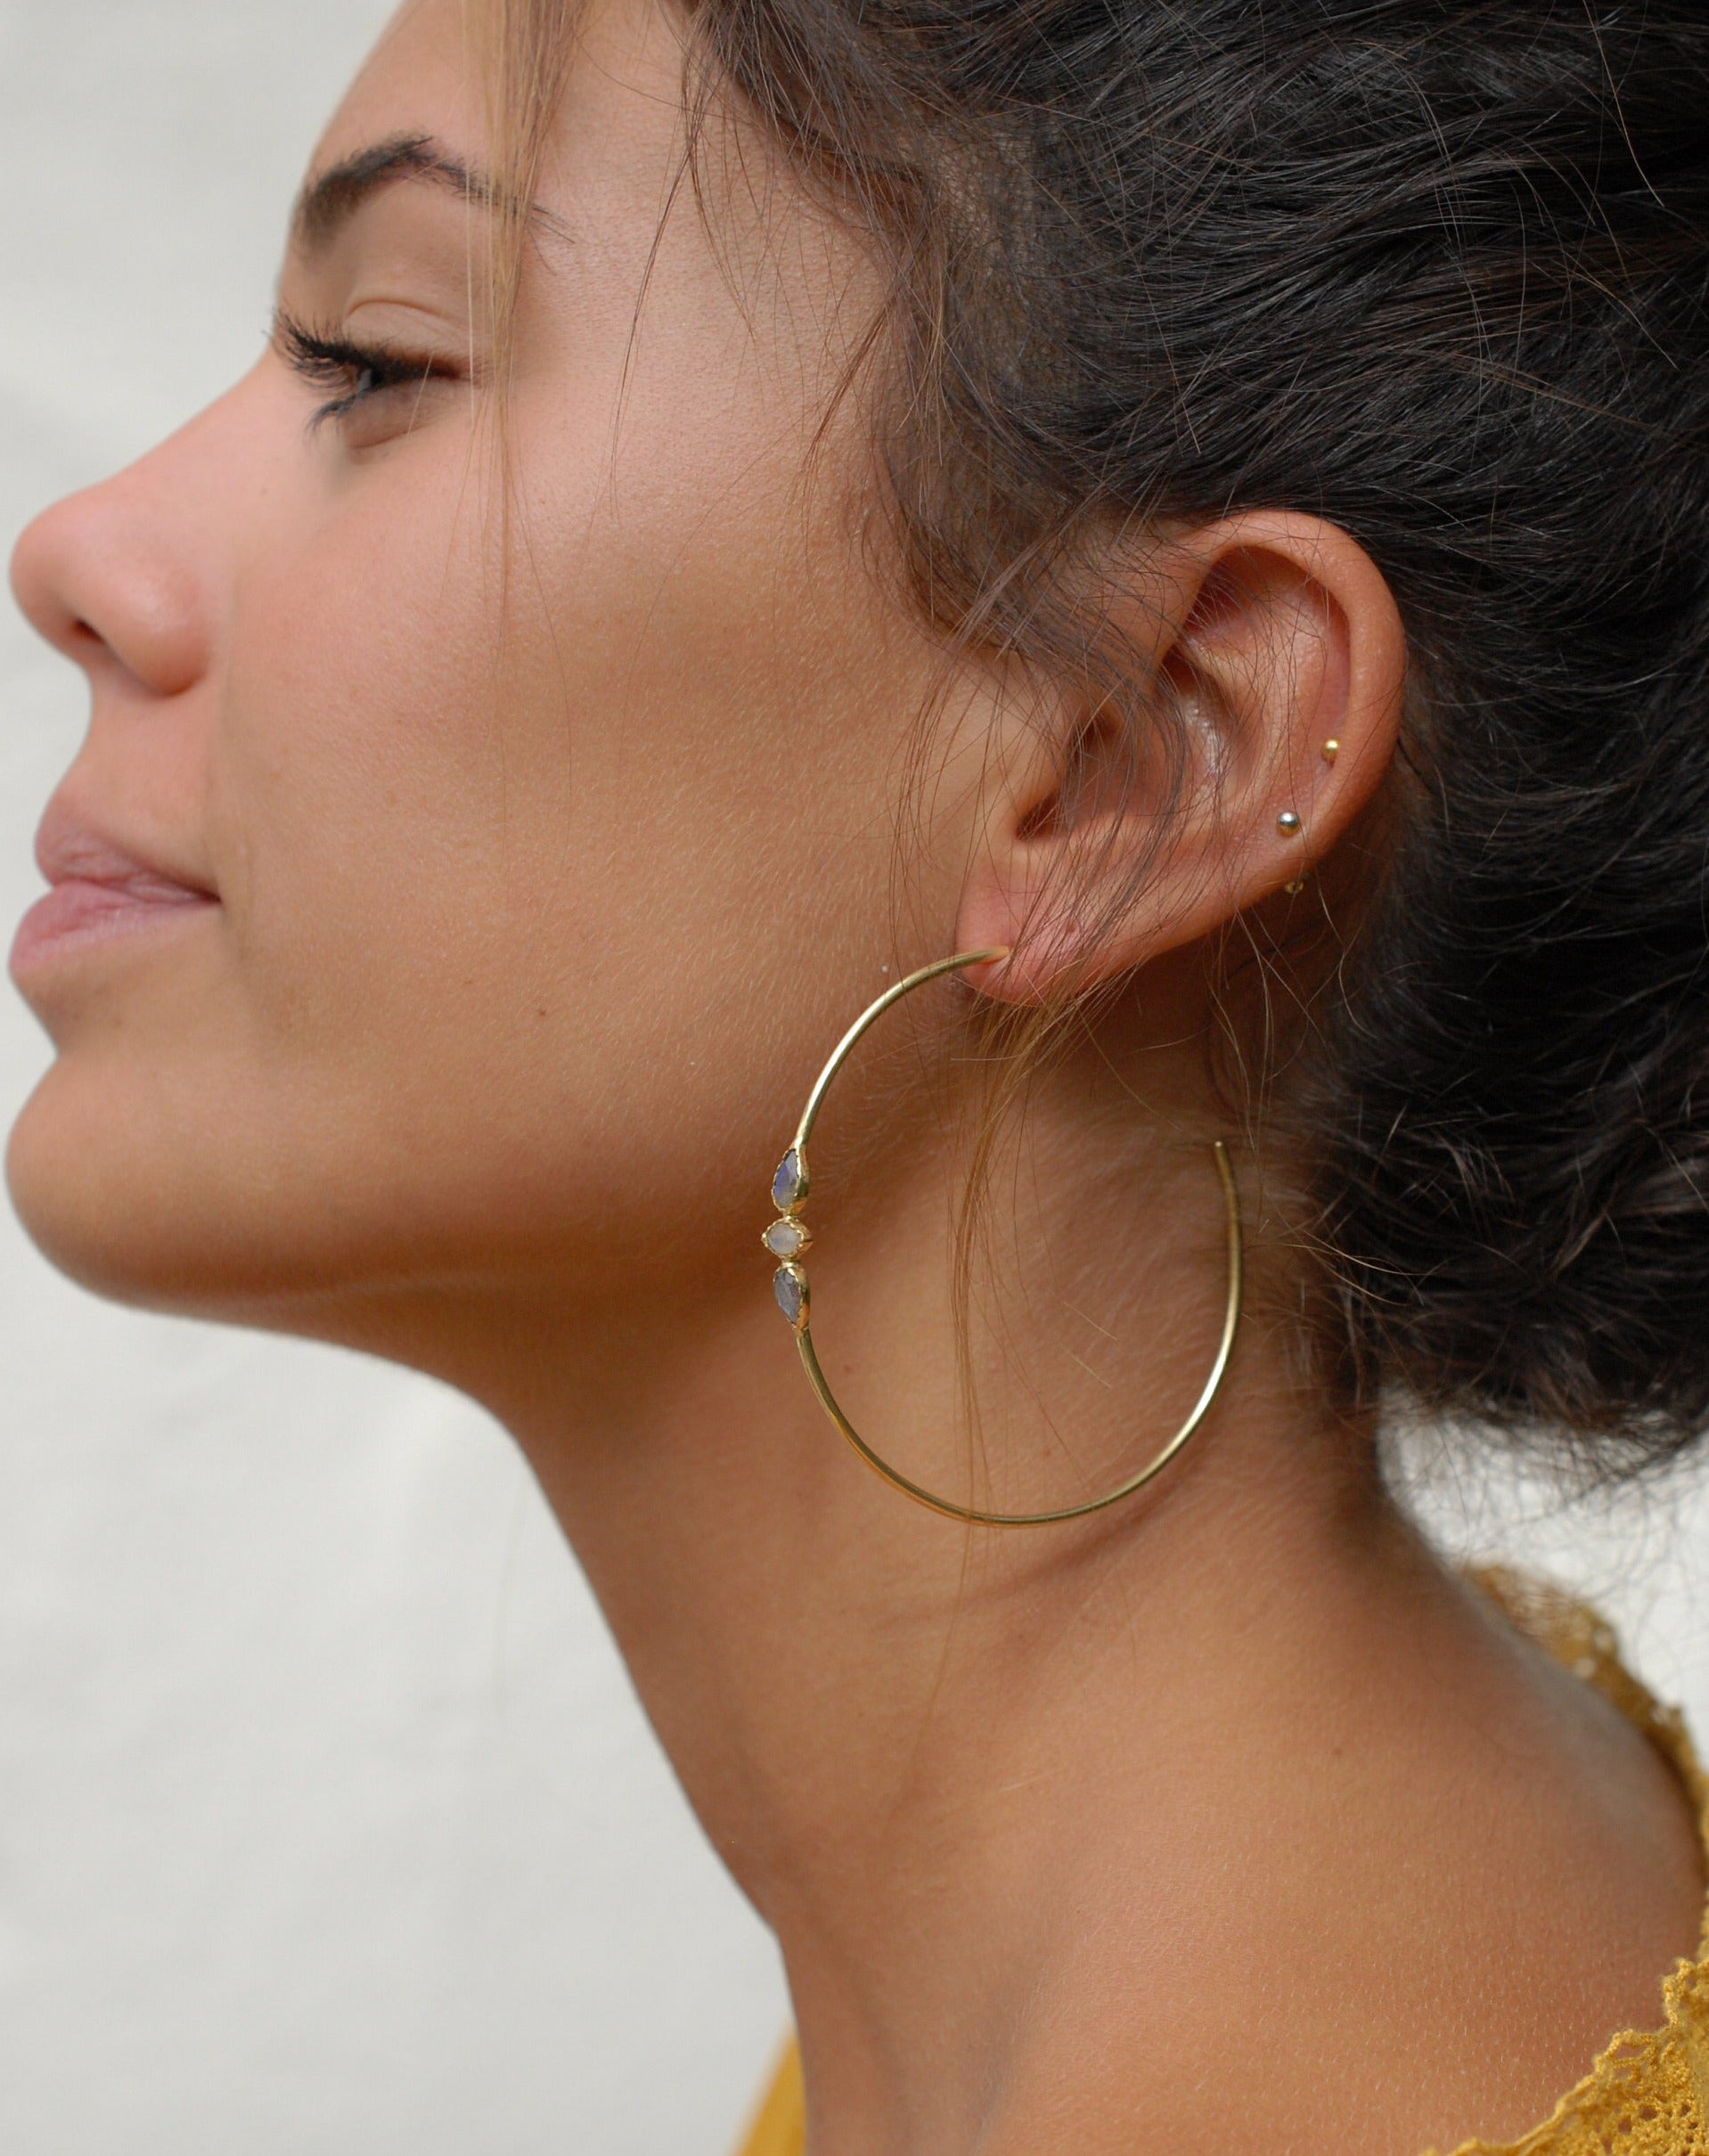 Machete Large Gold Hoops Earrings – MACHETE